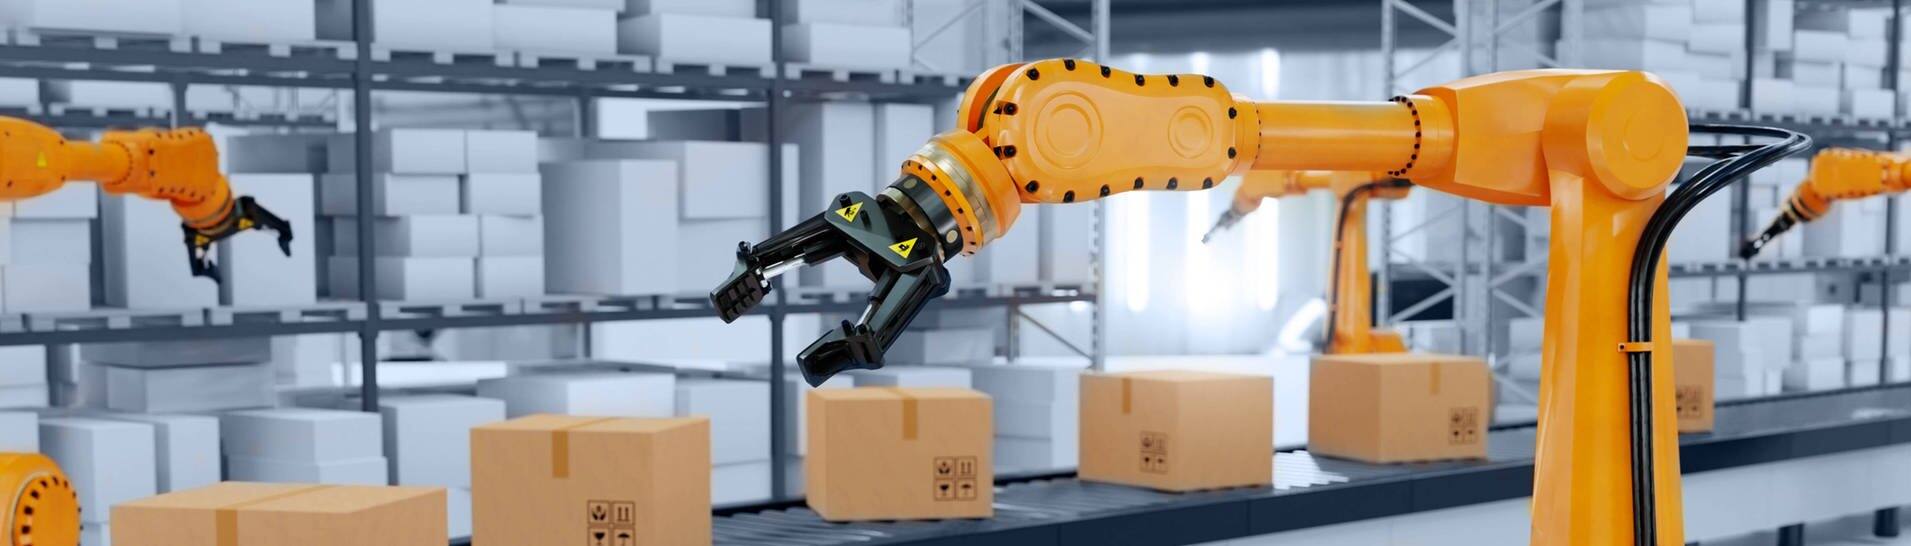 Symbolbild eines Industrieroboters mit Paketen auf einem Fließband